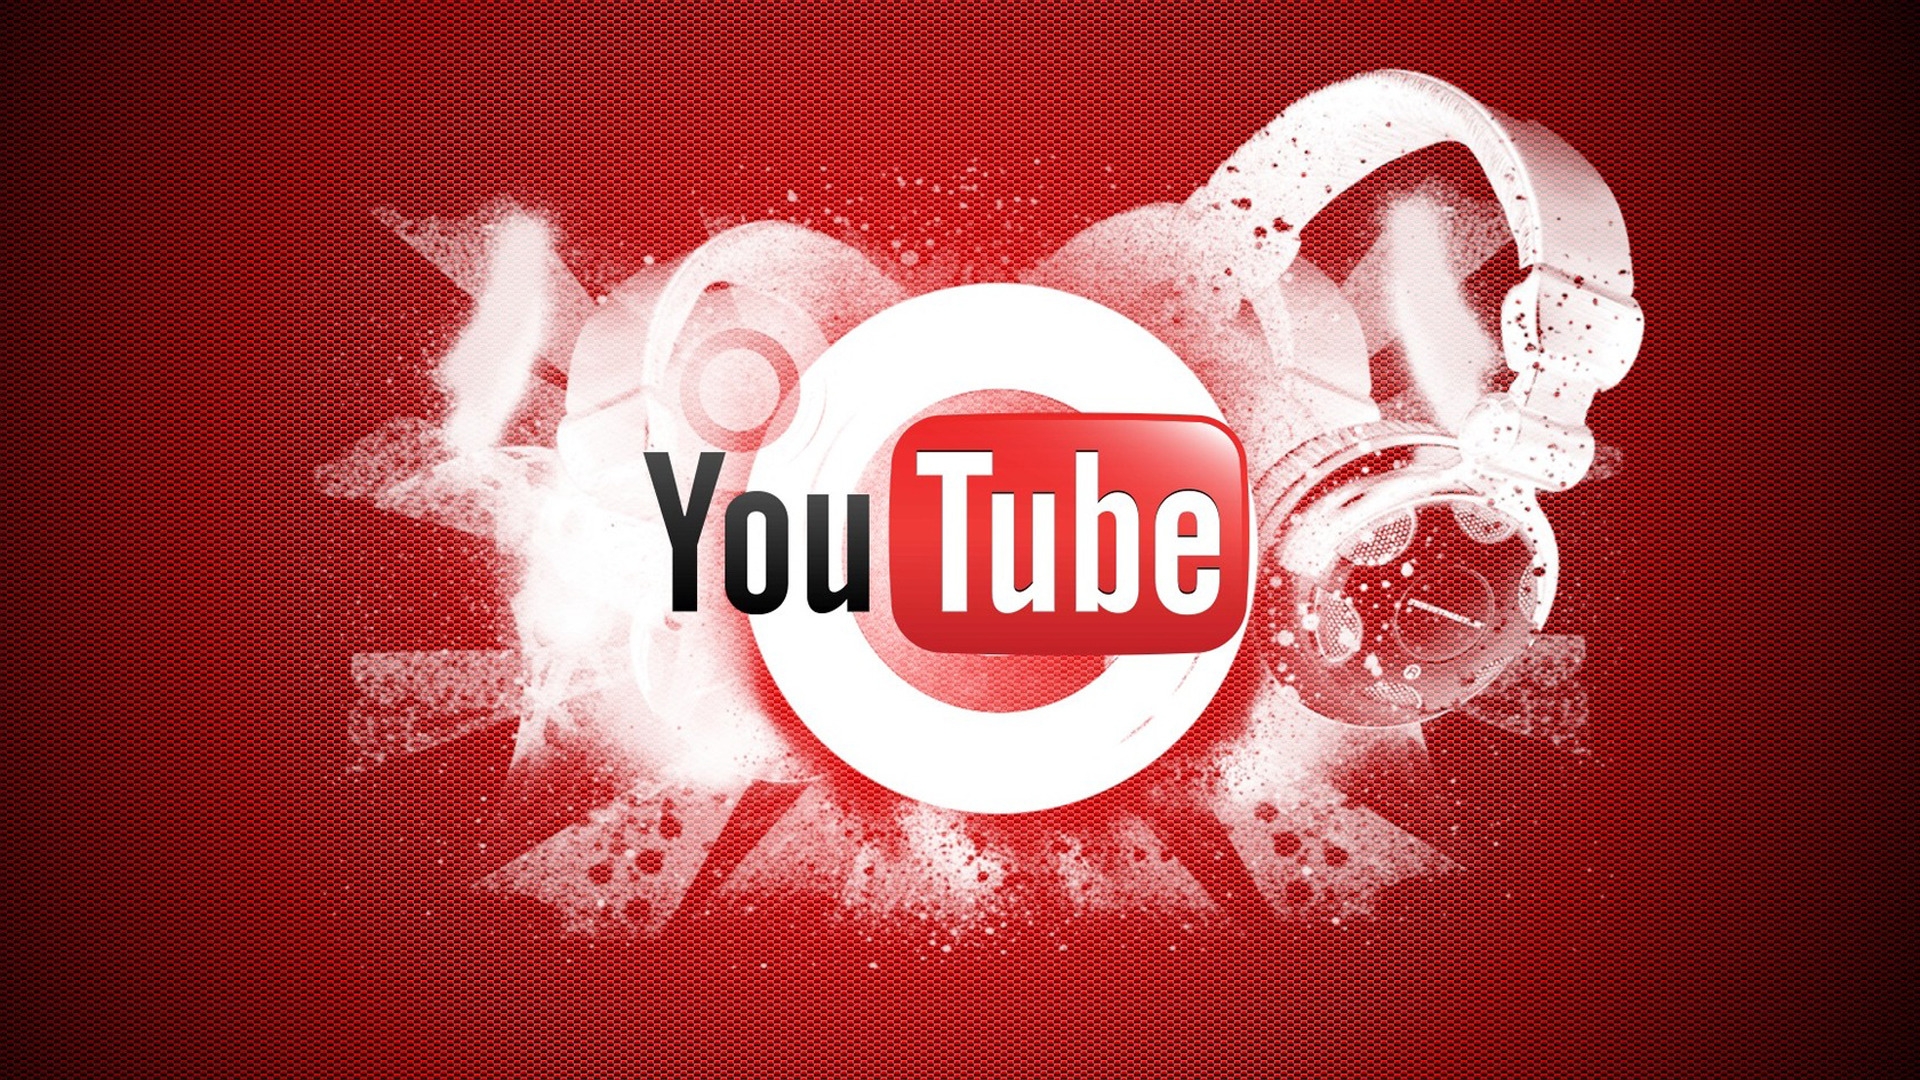 YouTube Logo for 1920 x 1080 HDTV 1080p resolution